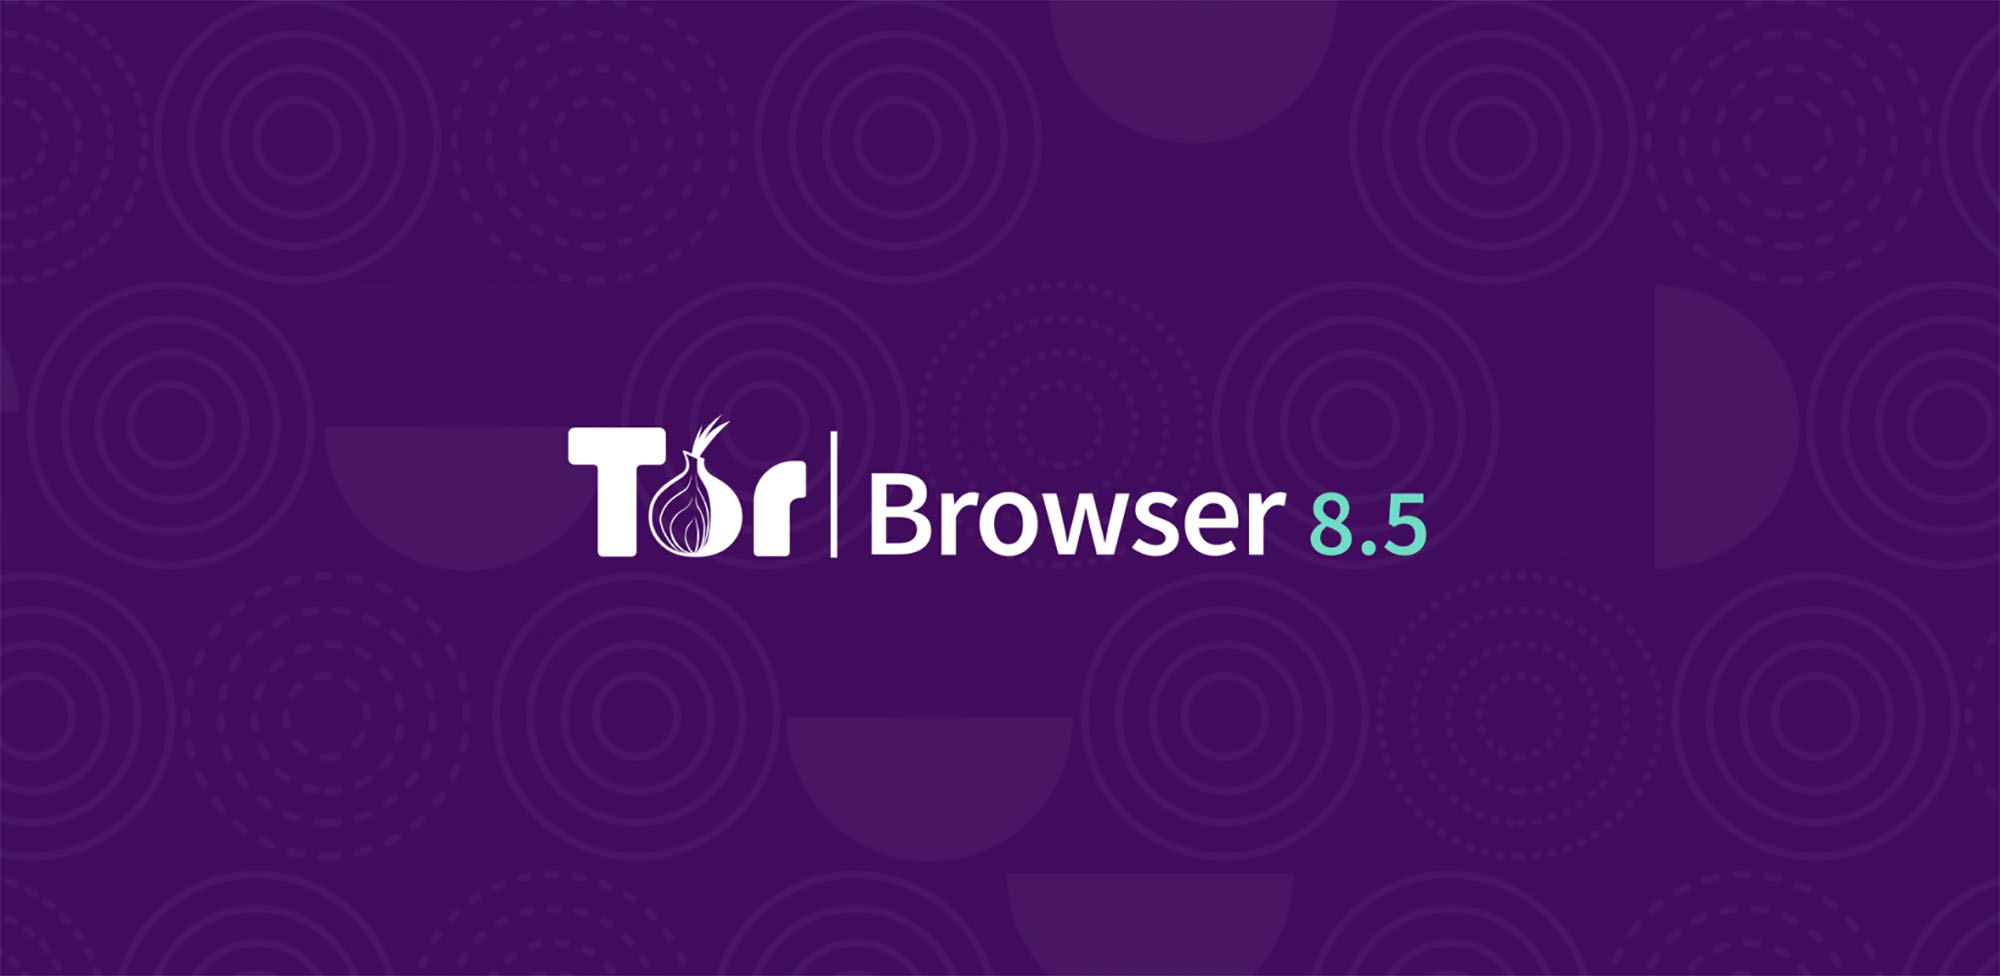 Tor browser уязвимости мега tor browser скачать на русском через торрент mega